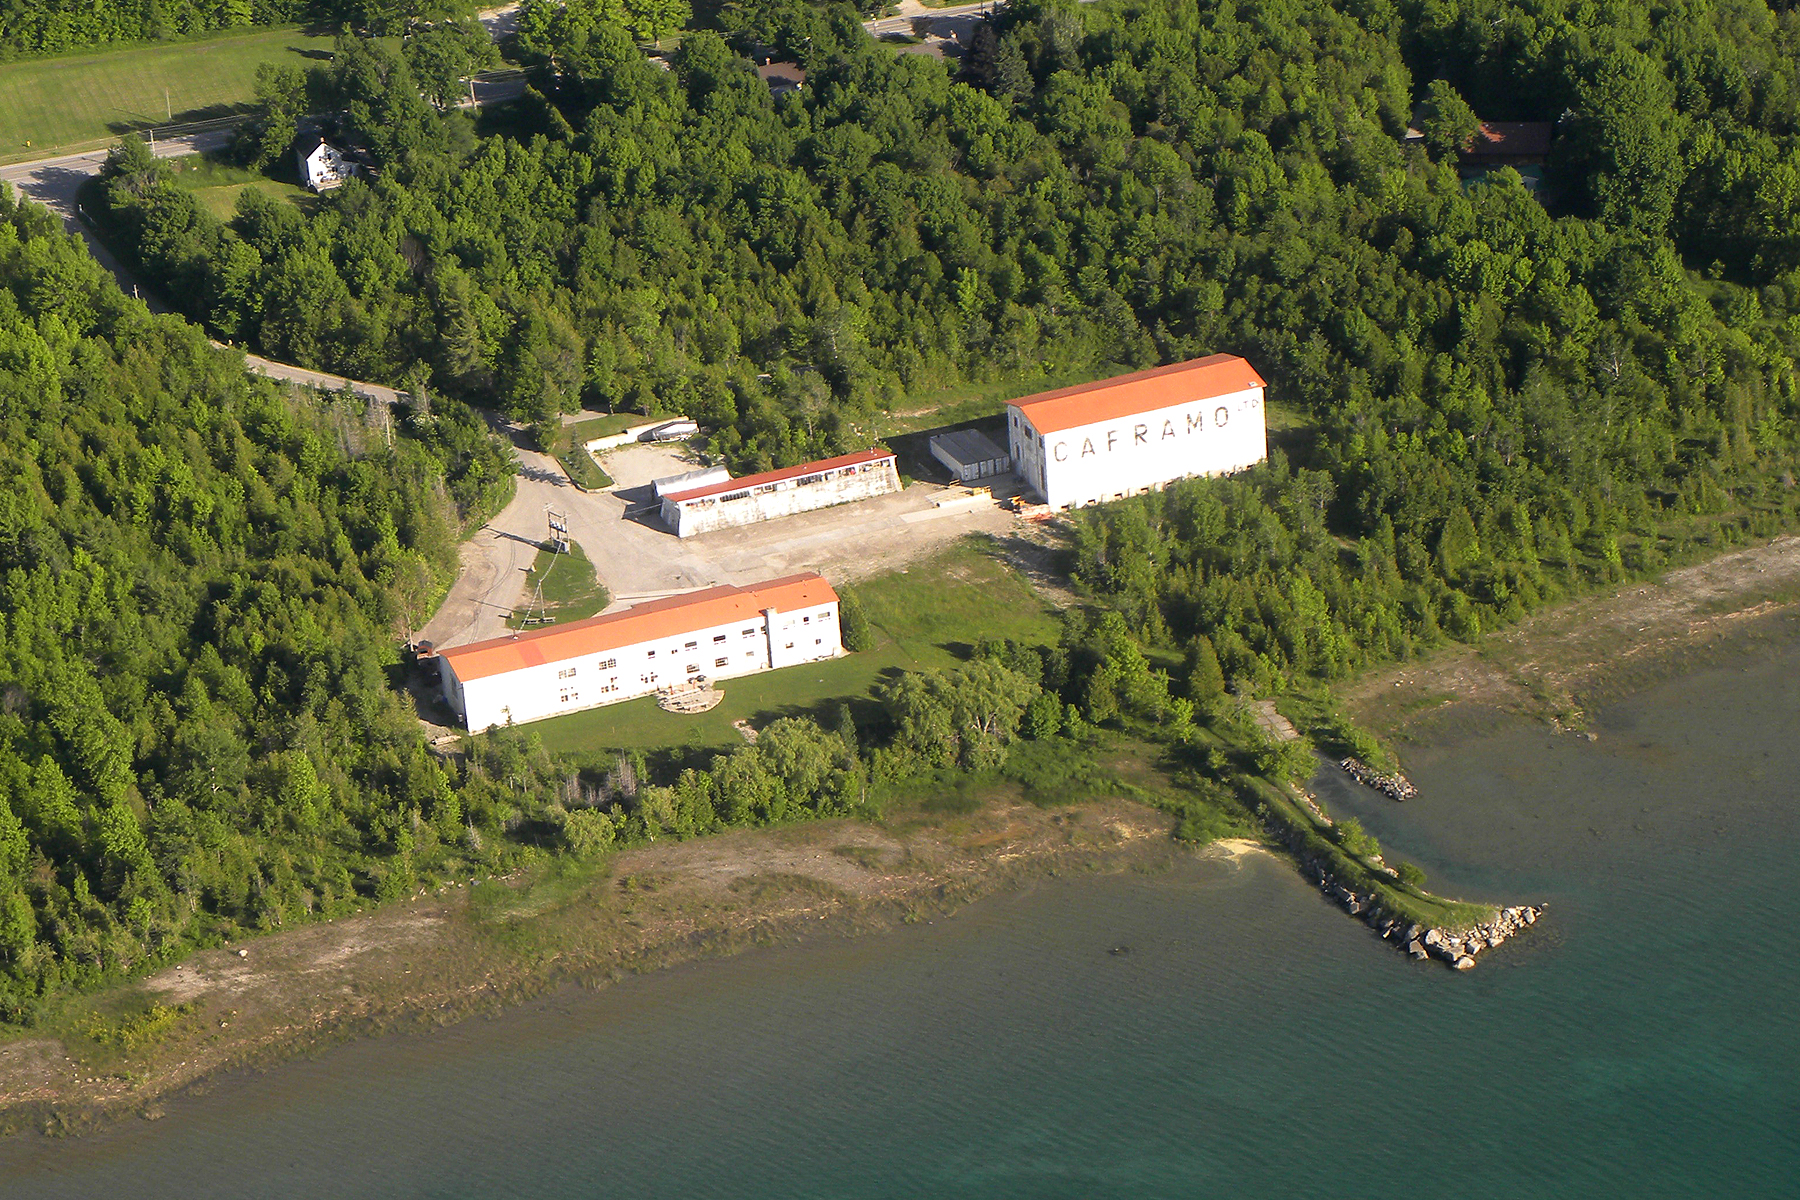 Aerial shot of Caframo premises